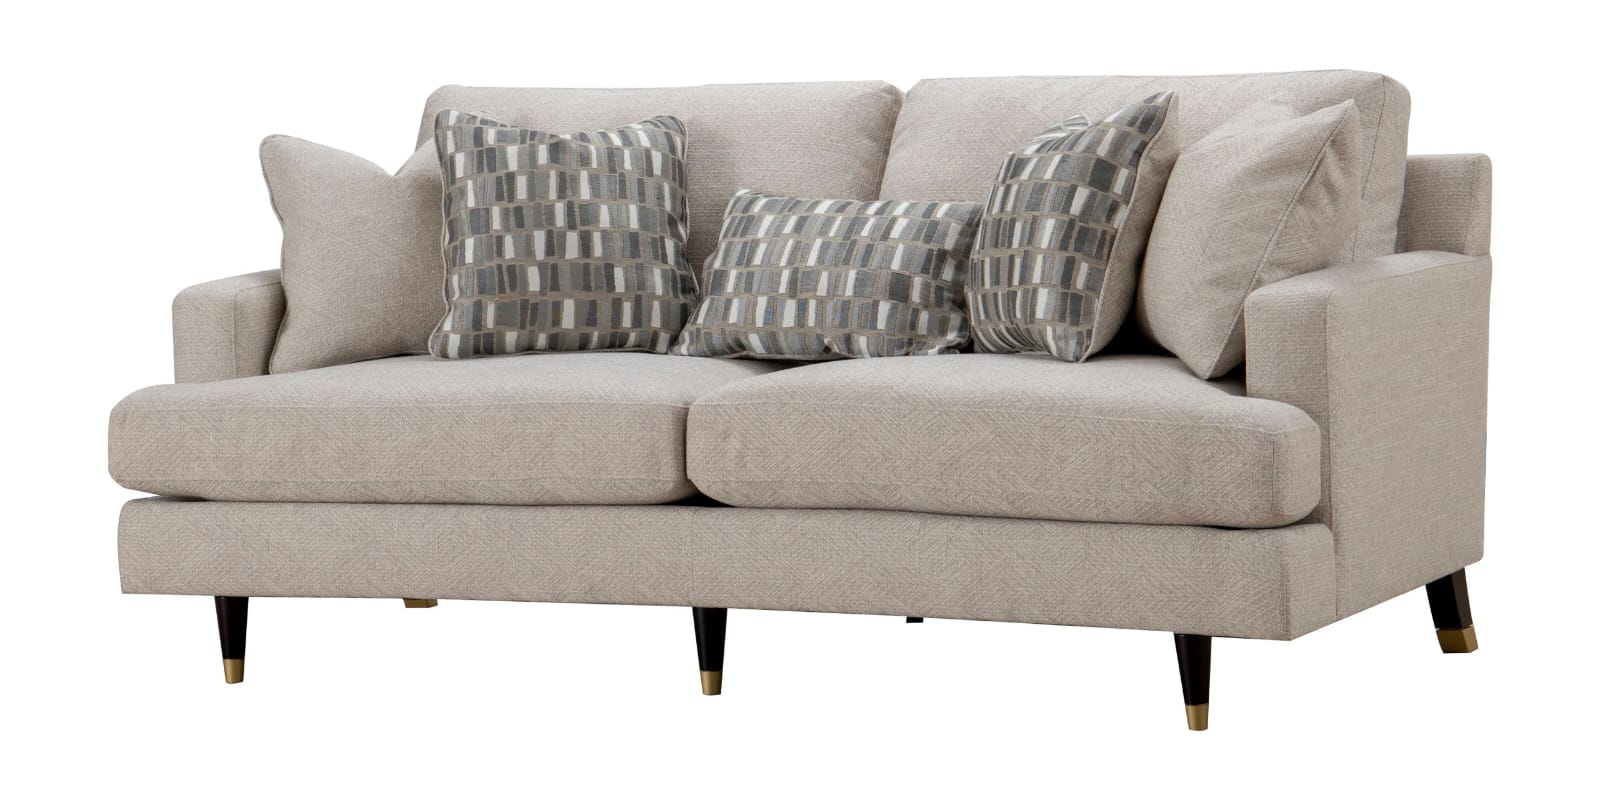 Caruso Beige 3 Seater Fabric Sofa